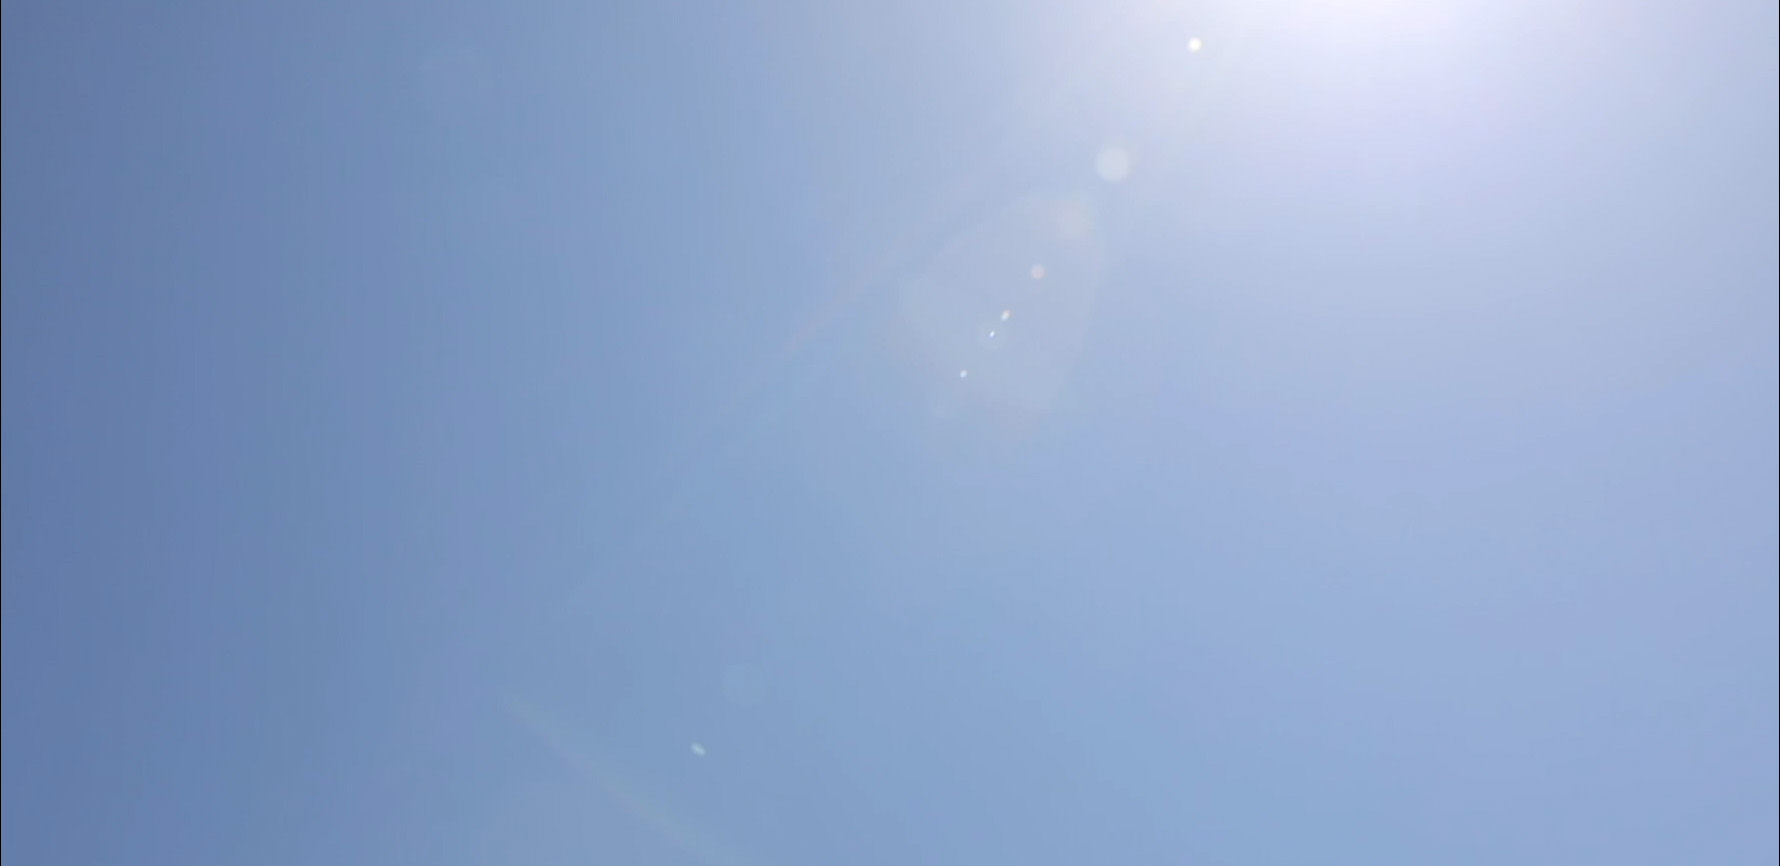 image of a blue sky